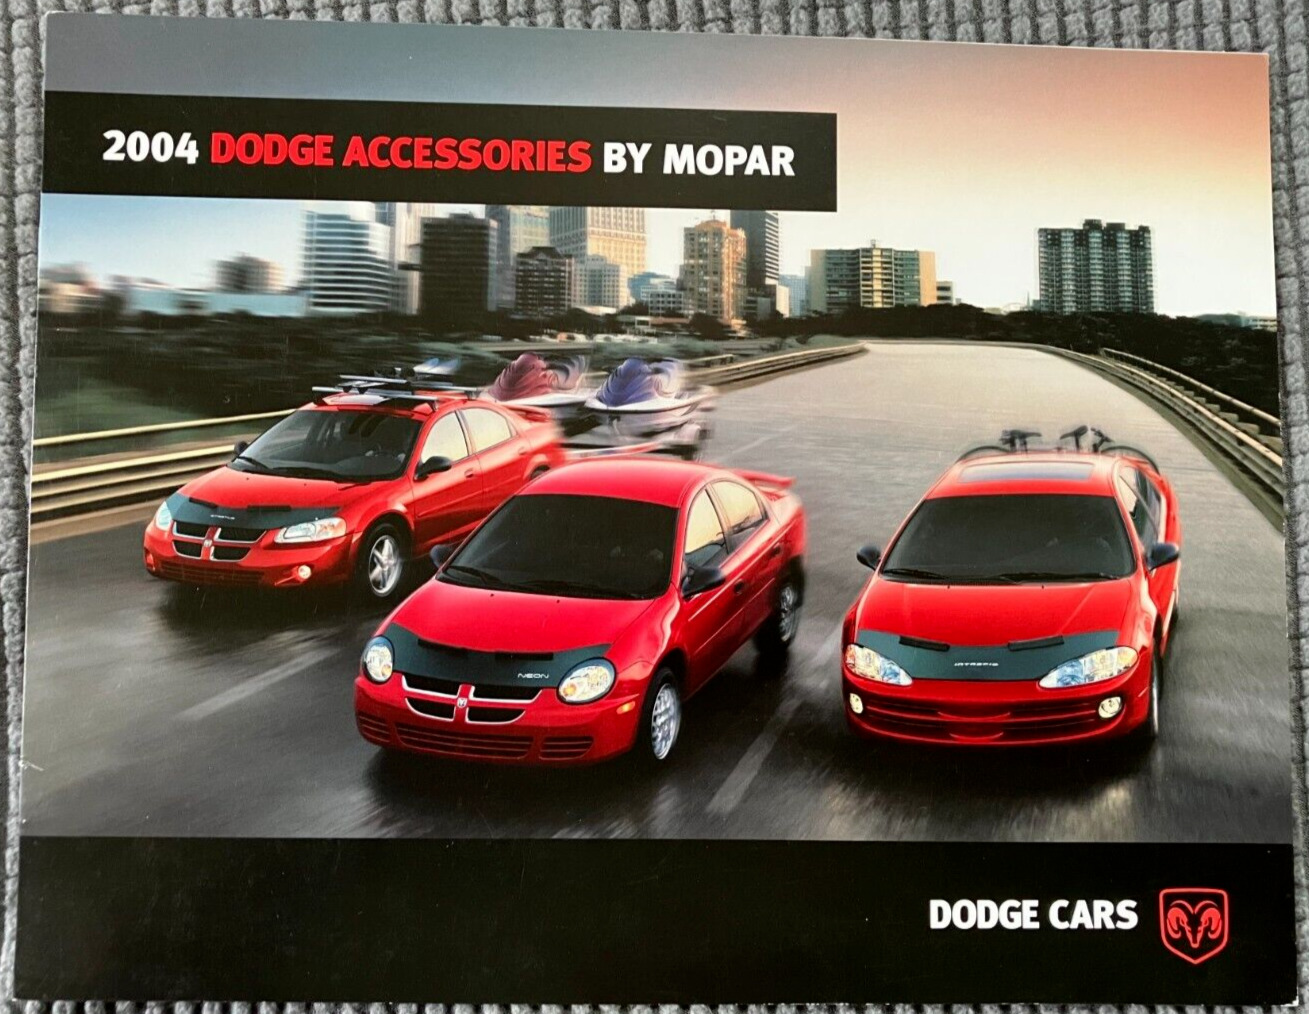 2004 Dodge Cars Accessories by Mopar - Original 8-Page Dealer Sales Brochure